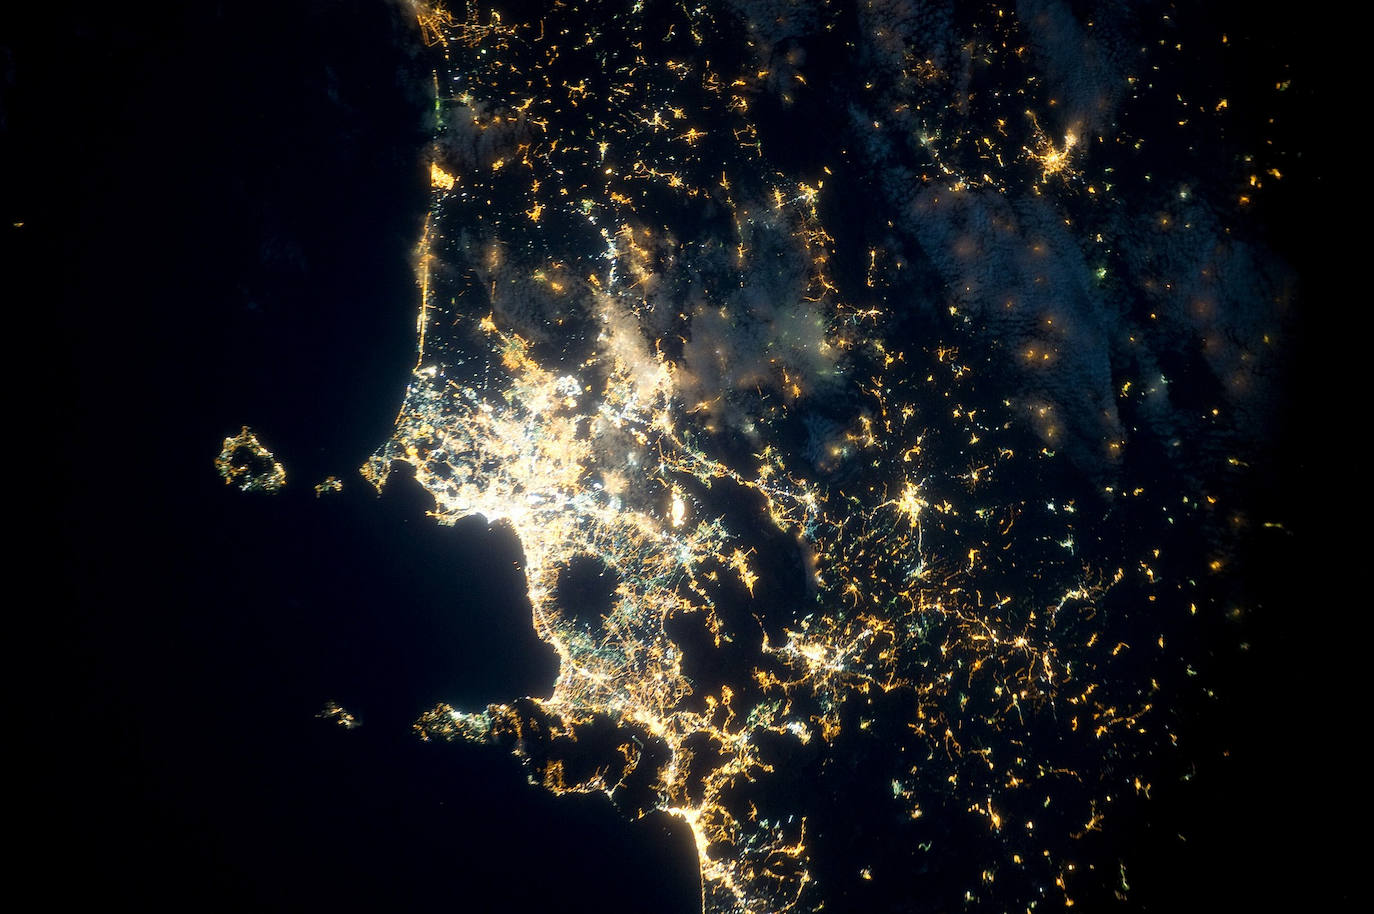 6. Nápoles: imagen tomada desde la Estación Espacial. El círculo sin luces situado cerca de la costa es el Monte Vesubio.